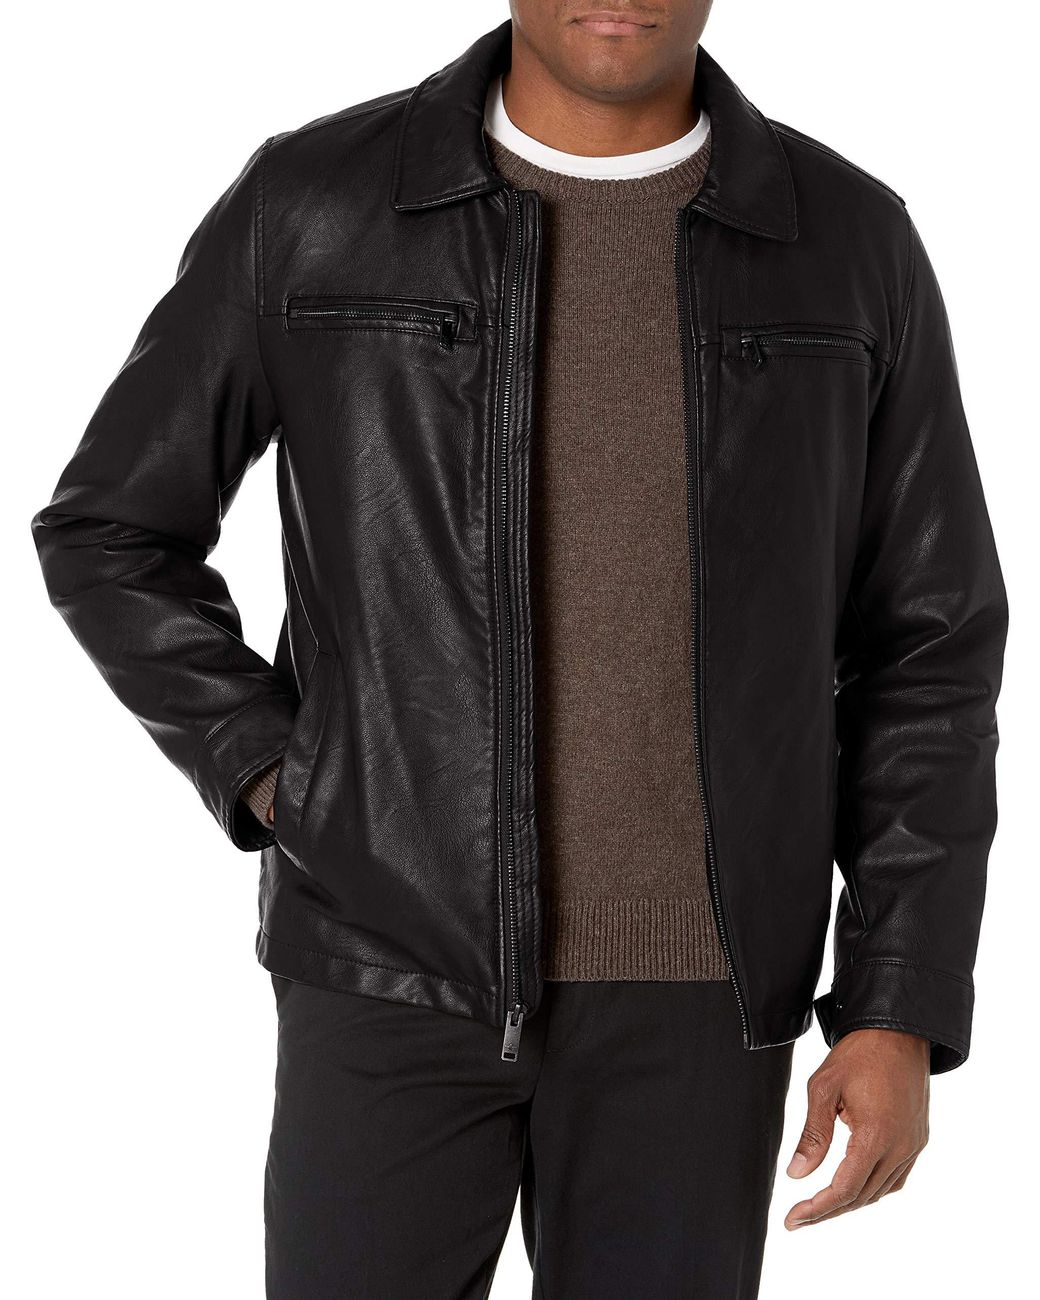 Dockers Faux Leather Jacket in Black for Men - Lyst